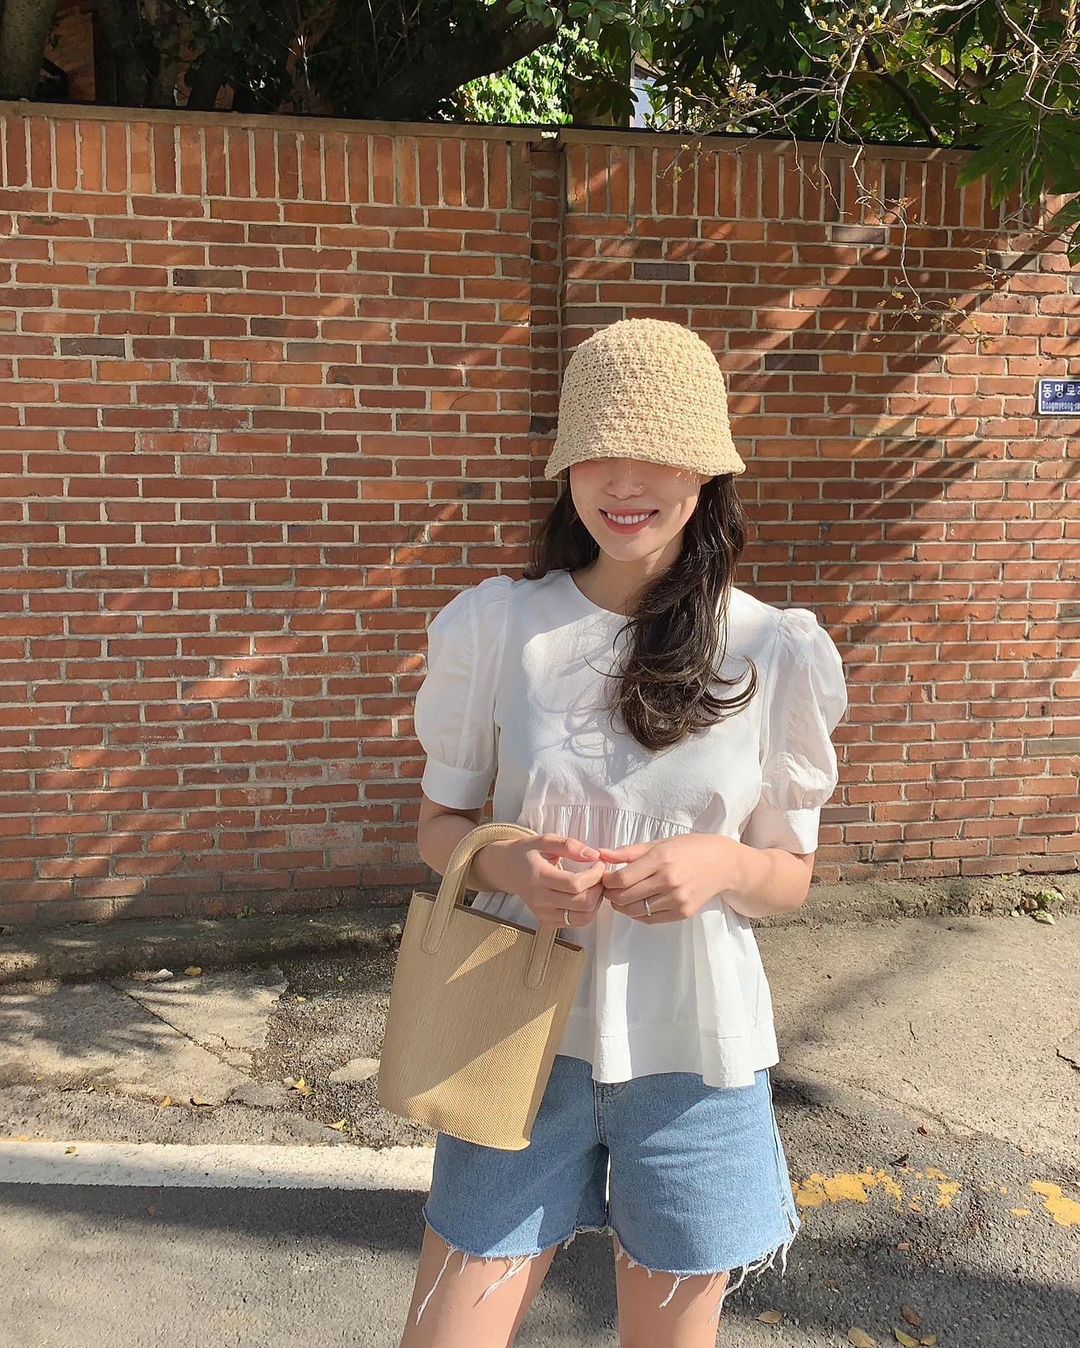 Có 1 mẫu áo mà dàn gái Hàn đang nâng như nâng trứng, diện lên đảm bảo có ảnh đẹp post Instagram sống ảo! - Ảnh 2.